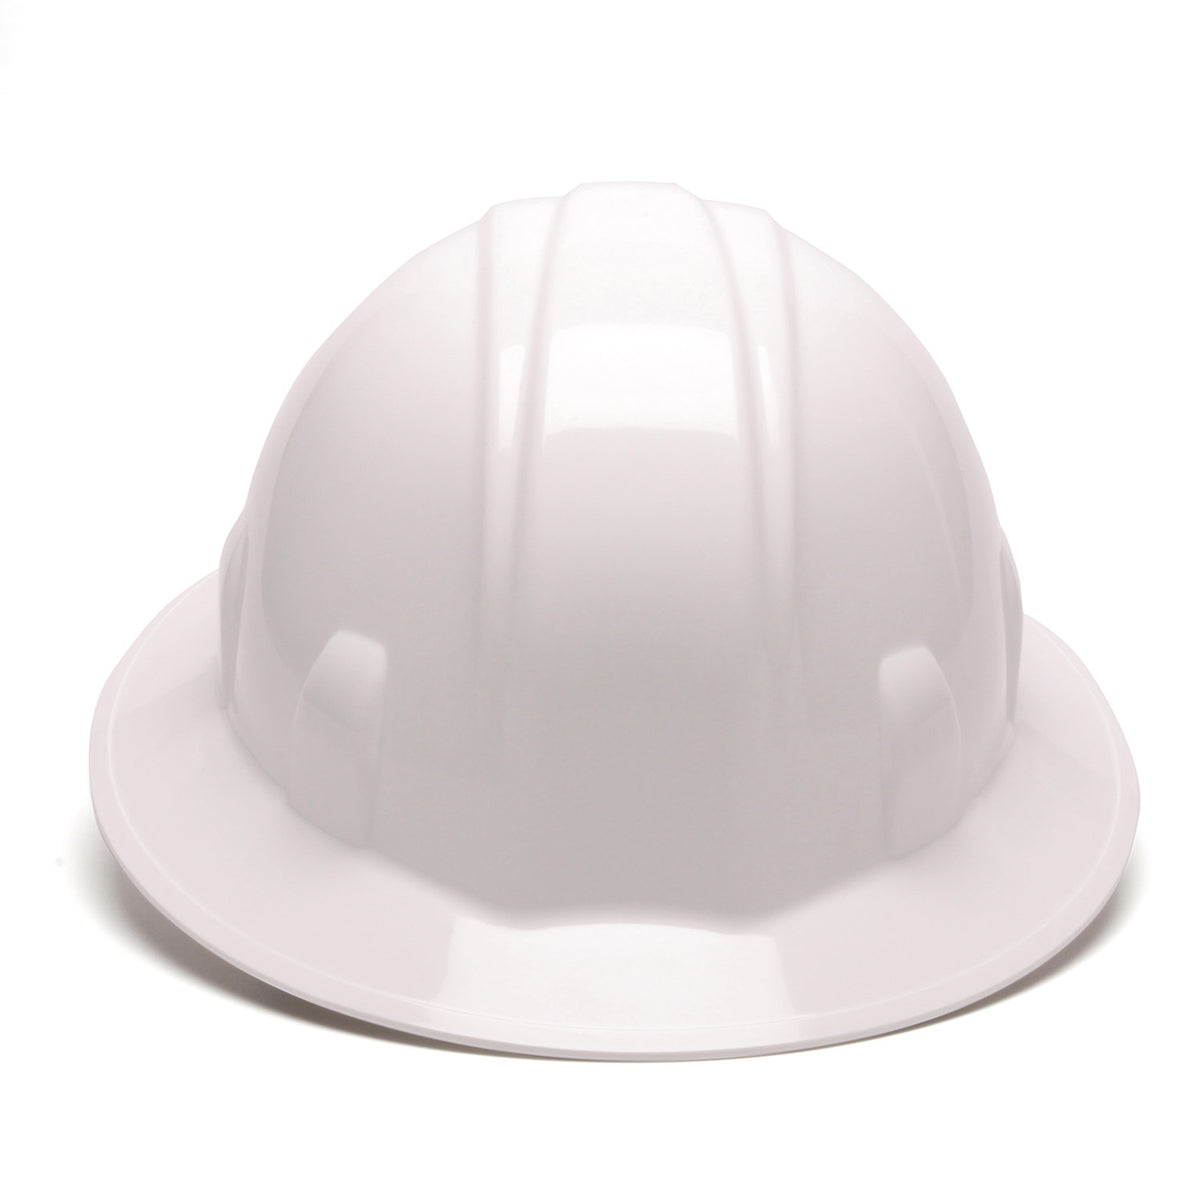 Pyramex SL Series Full Brim Hard Hat_White - Work World - Workwear, Work Boots, Safety Gear